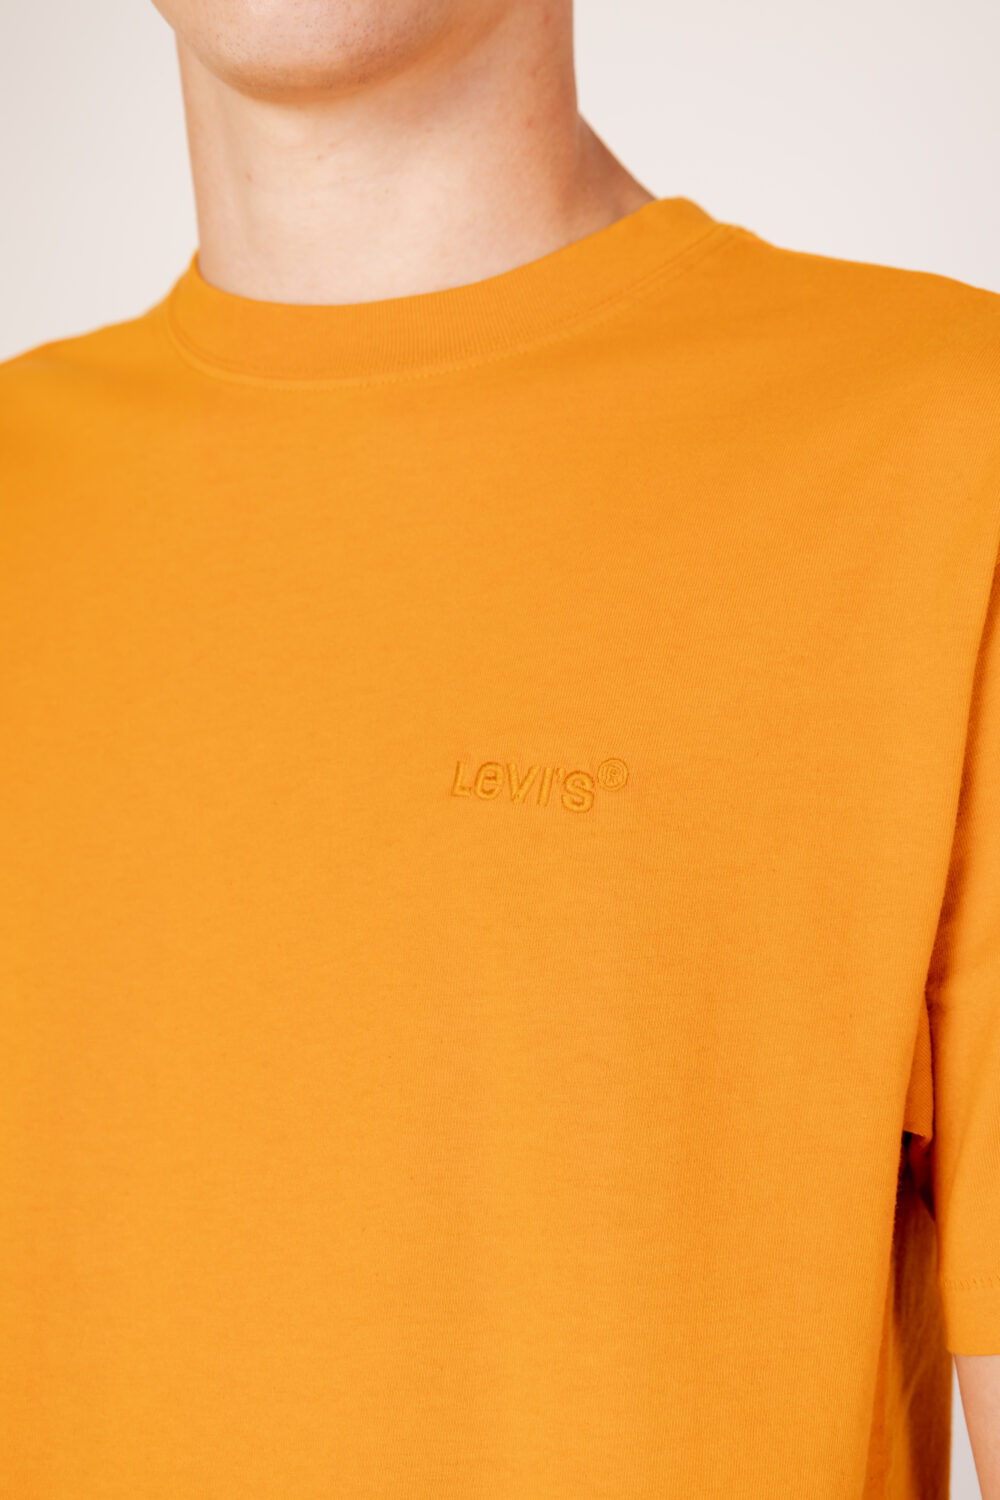 T-shirt Levi's® red tab vintage tee Arancione - Foto 2